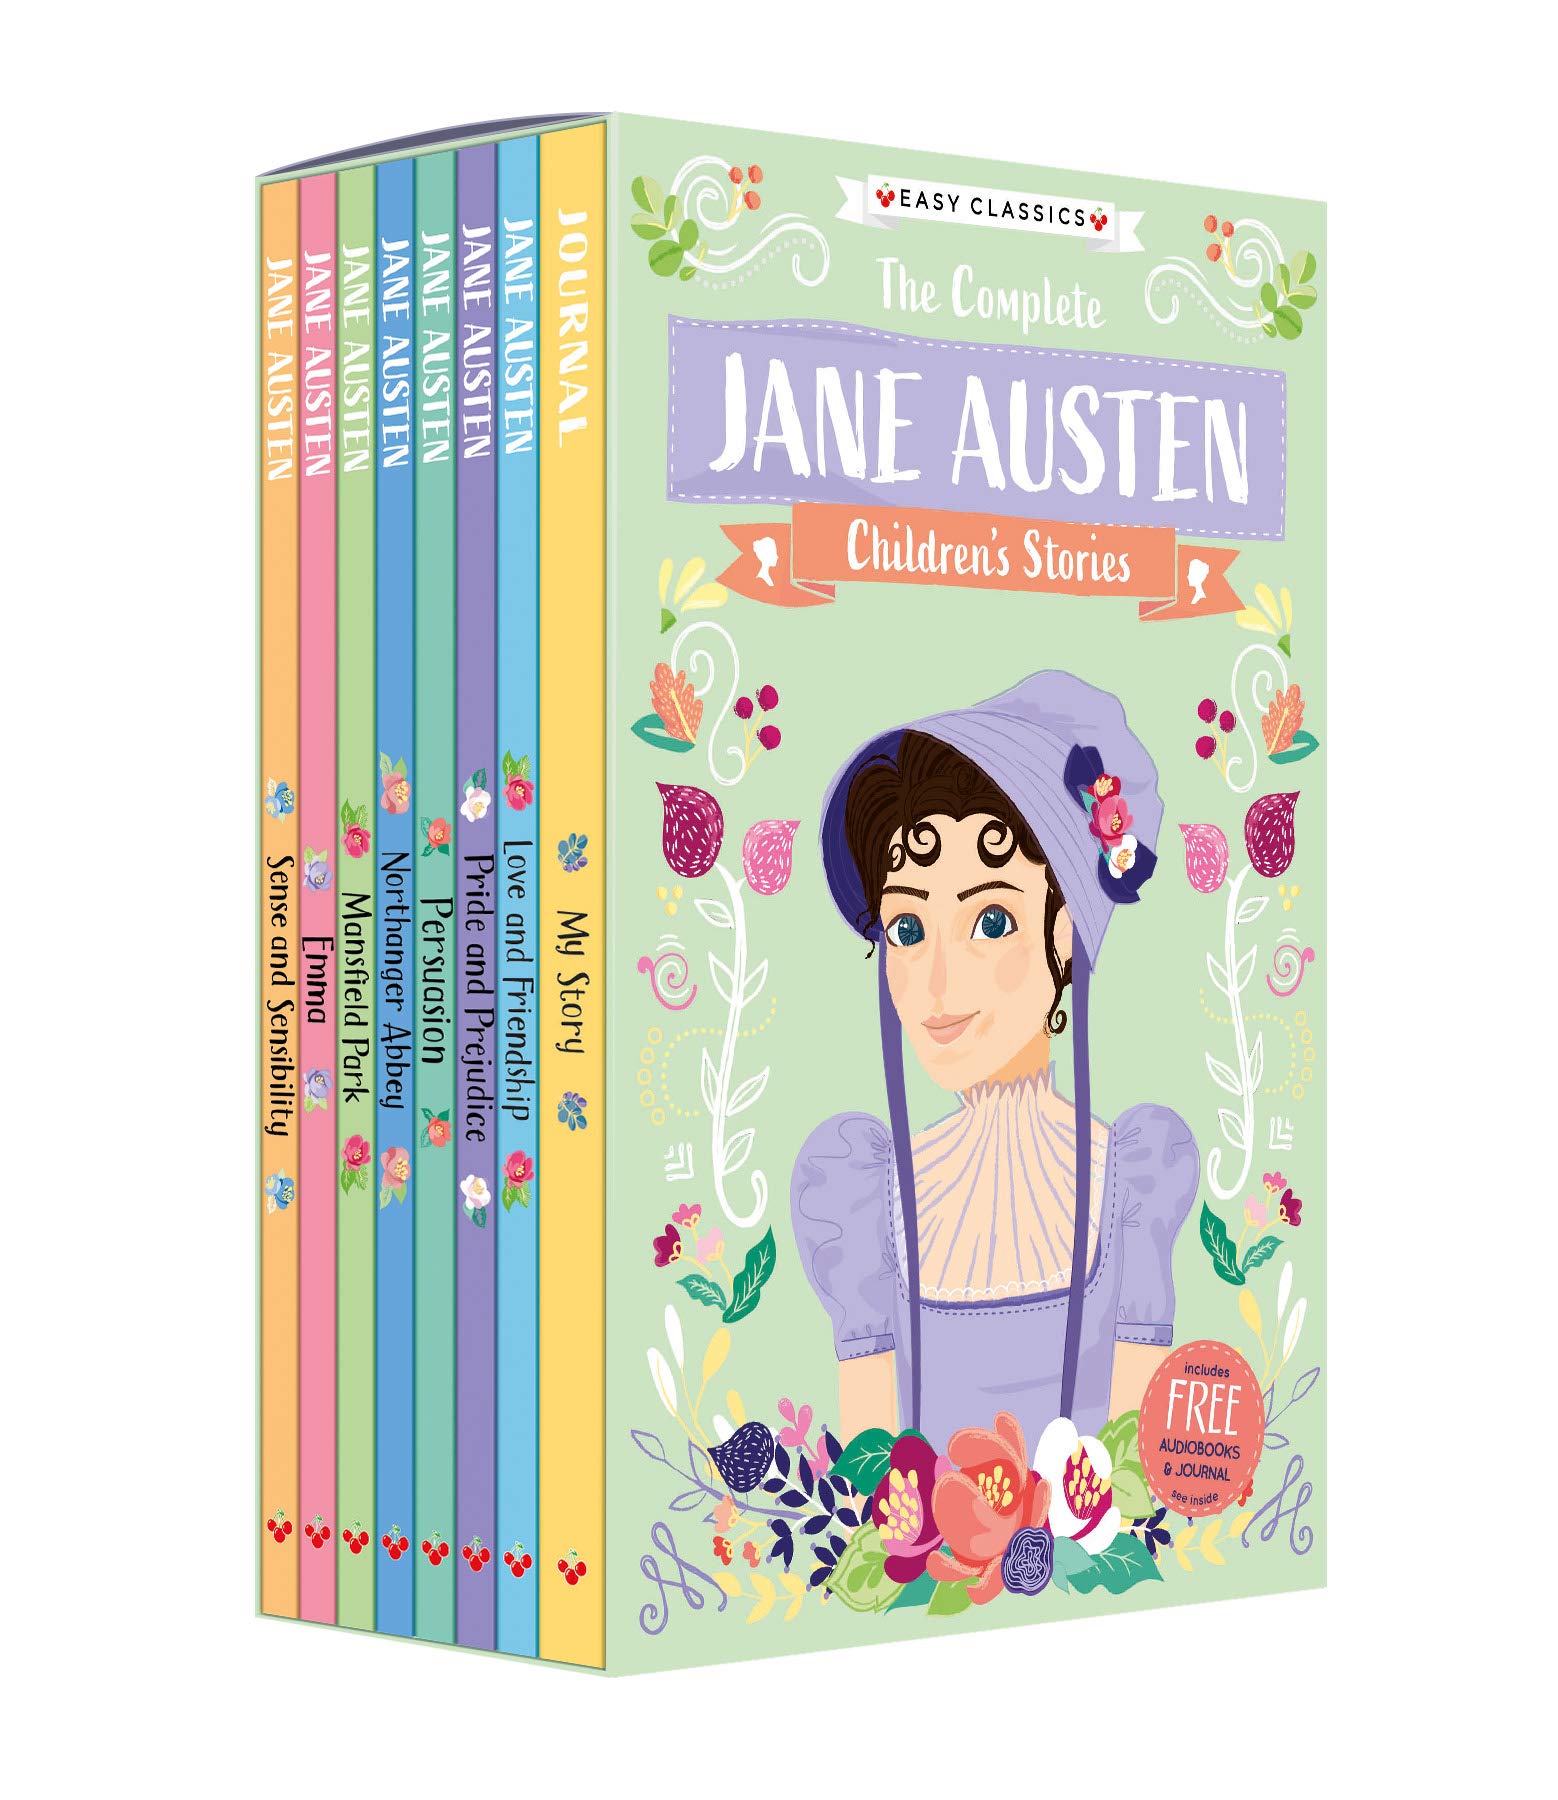 The Complete Jane Austen Children's Stories